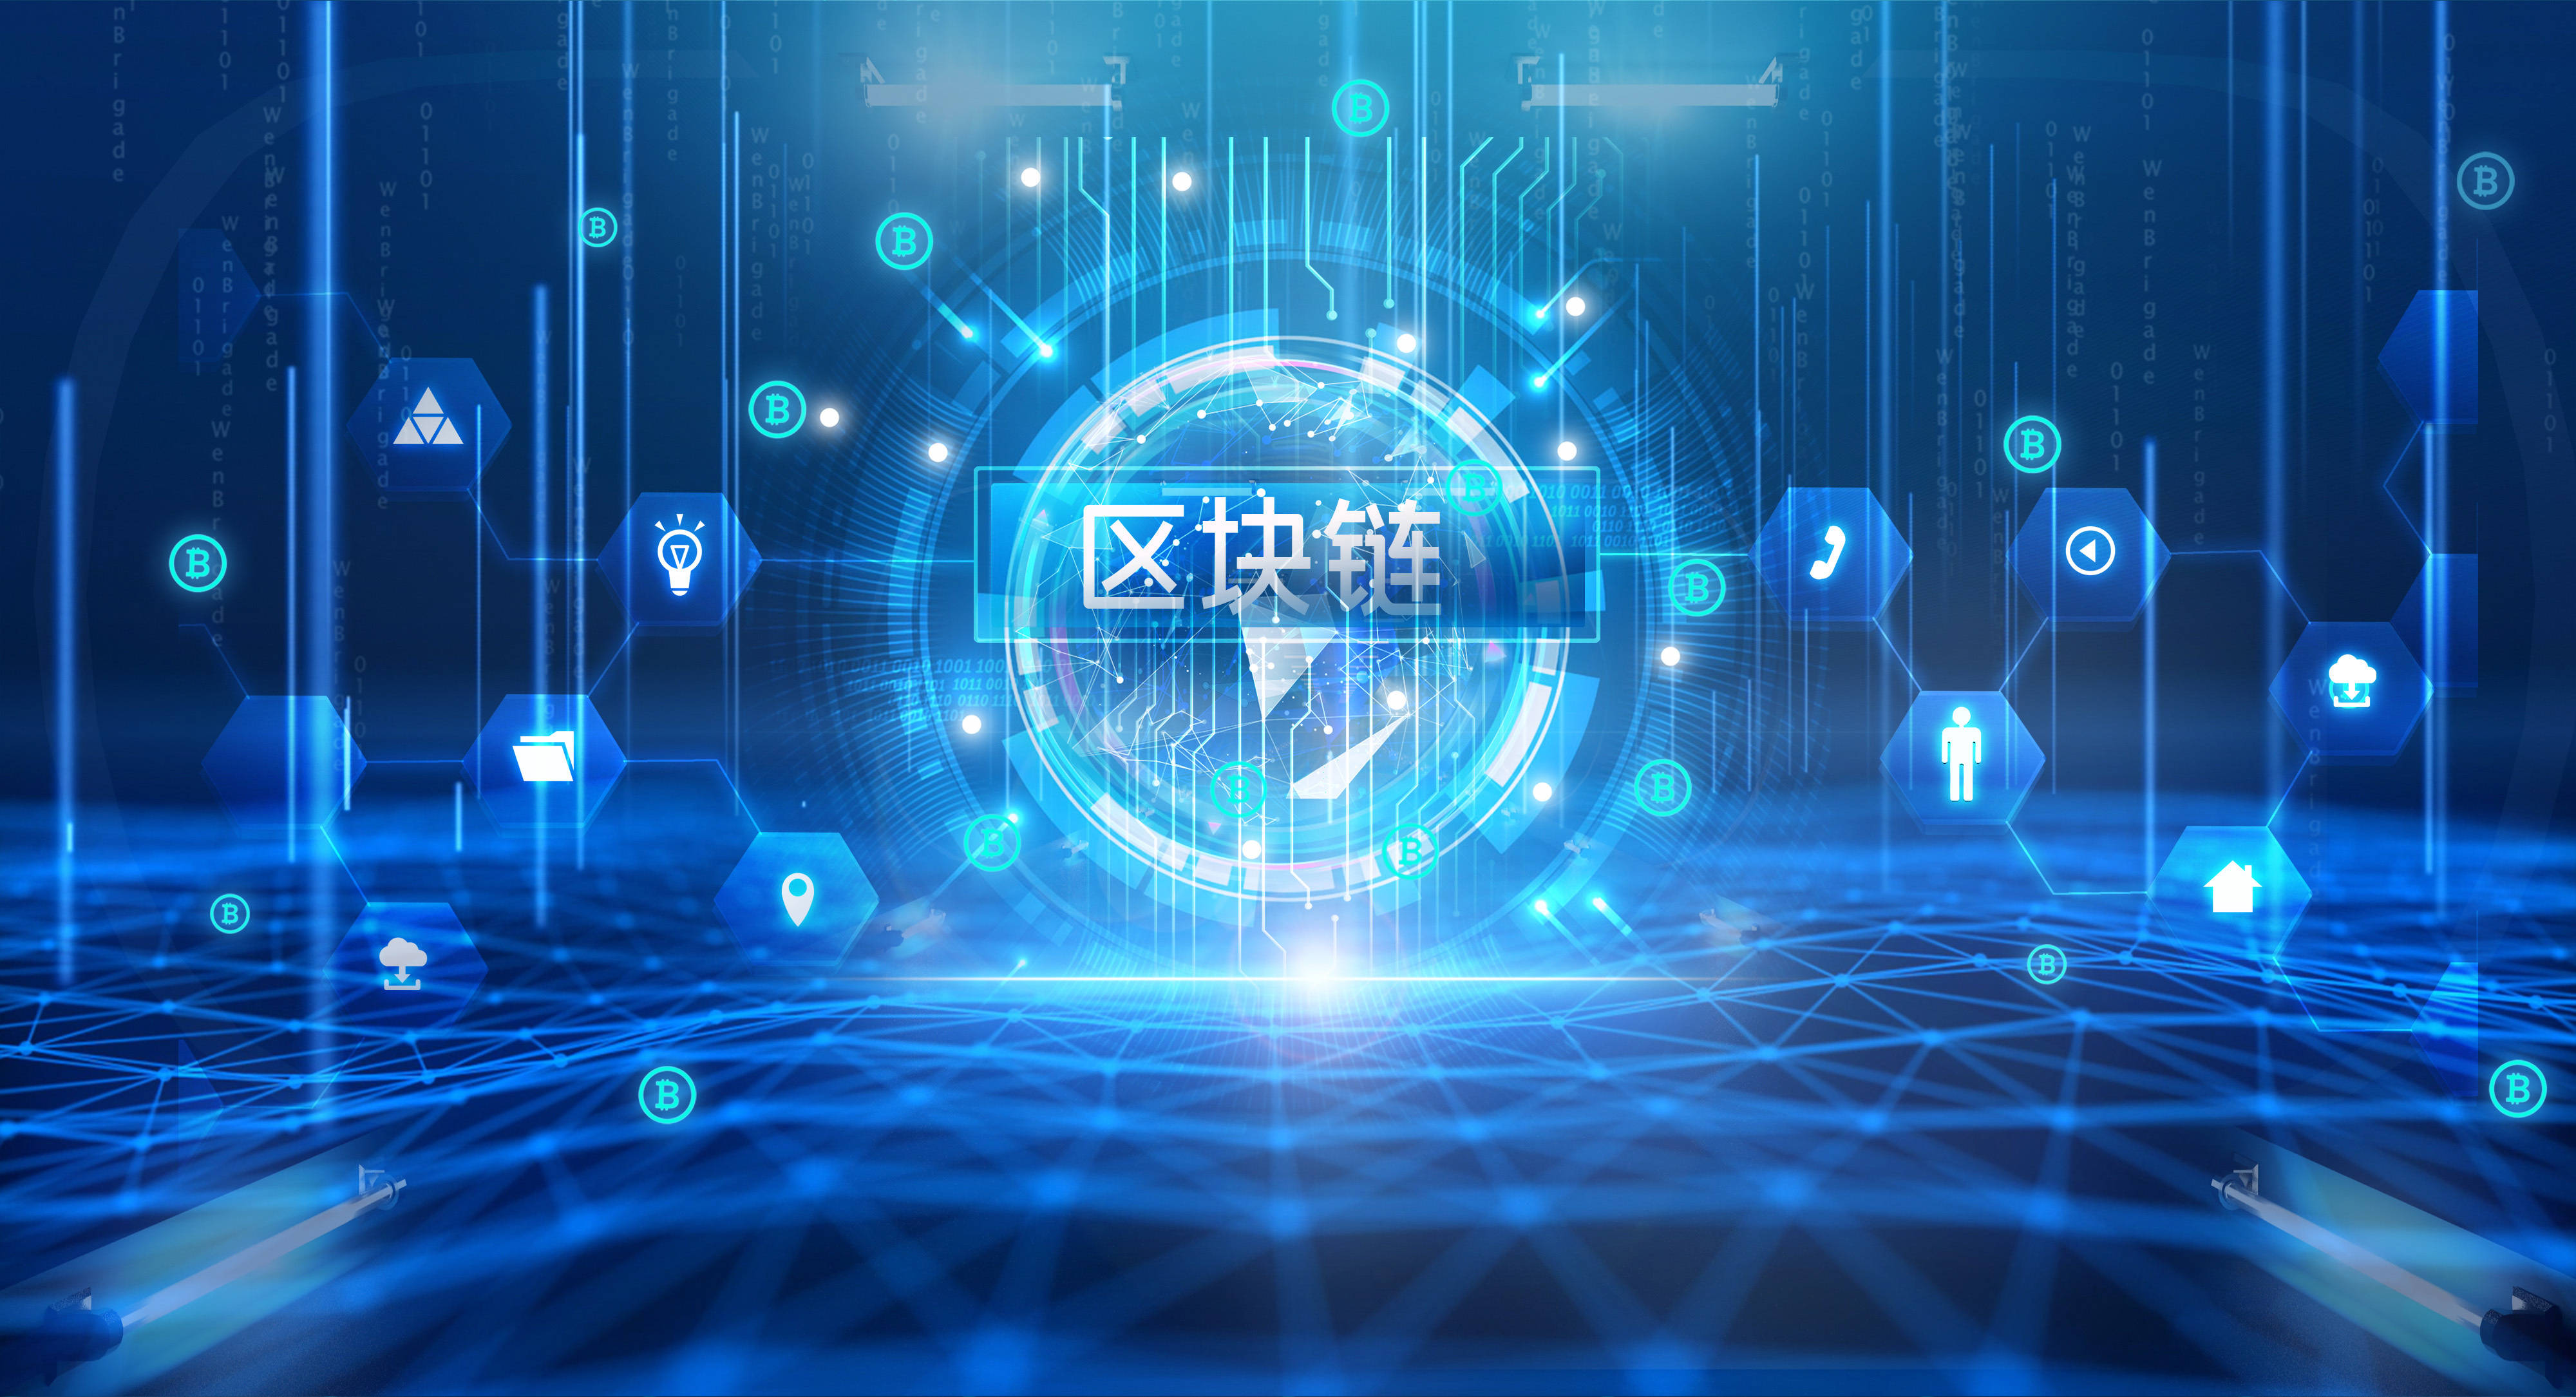 图片展示了充满科技感的蓝色背景，中心有“区块链”字样，四周是各种数字化图标和符号，体现了现代网络技术的概念。